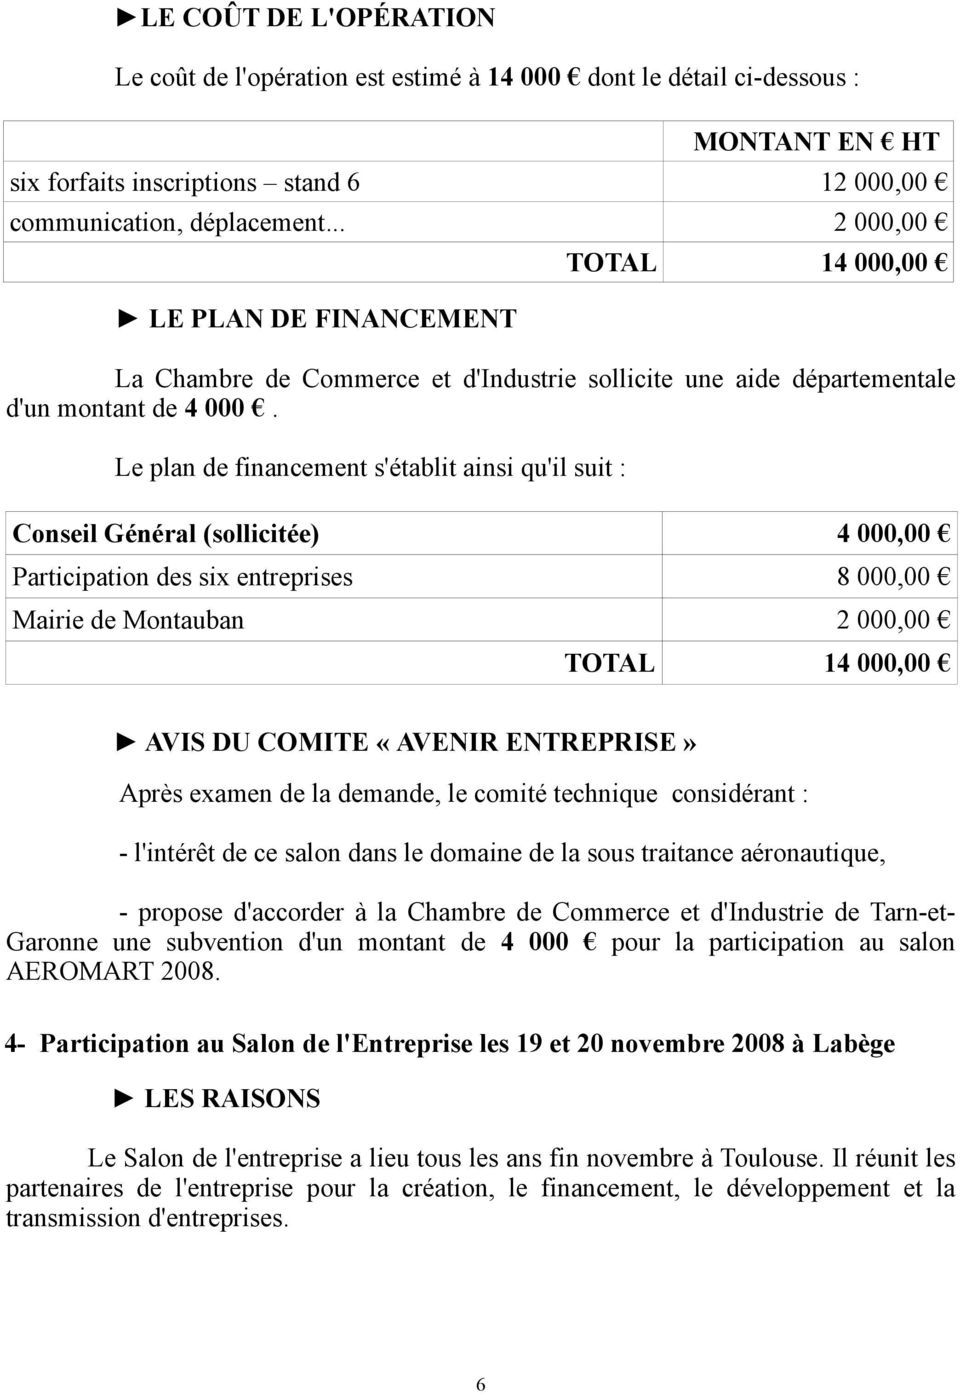 Le plan de financement s'établit ainsi qu'il suit : Conseil Général (sollicitée) 4 000,00 Participation des six entreprises 8 000,00 Mairie de Montauban 2 000,00 TOTAL 14 000,00 AVIS DU COMITE